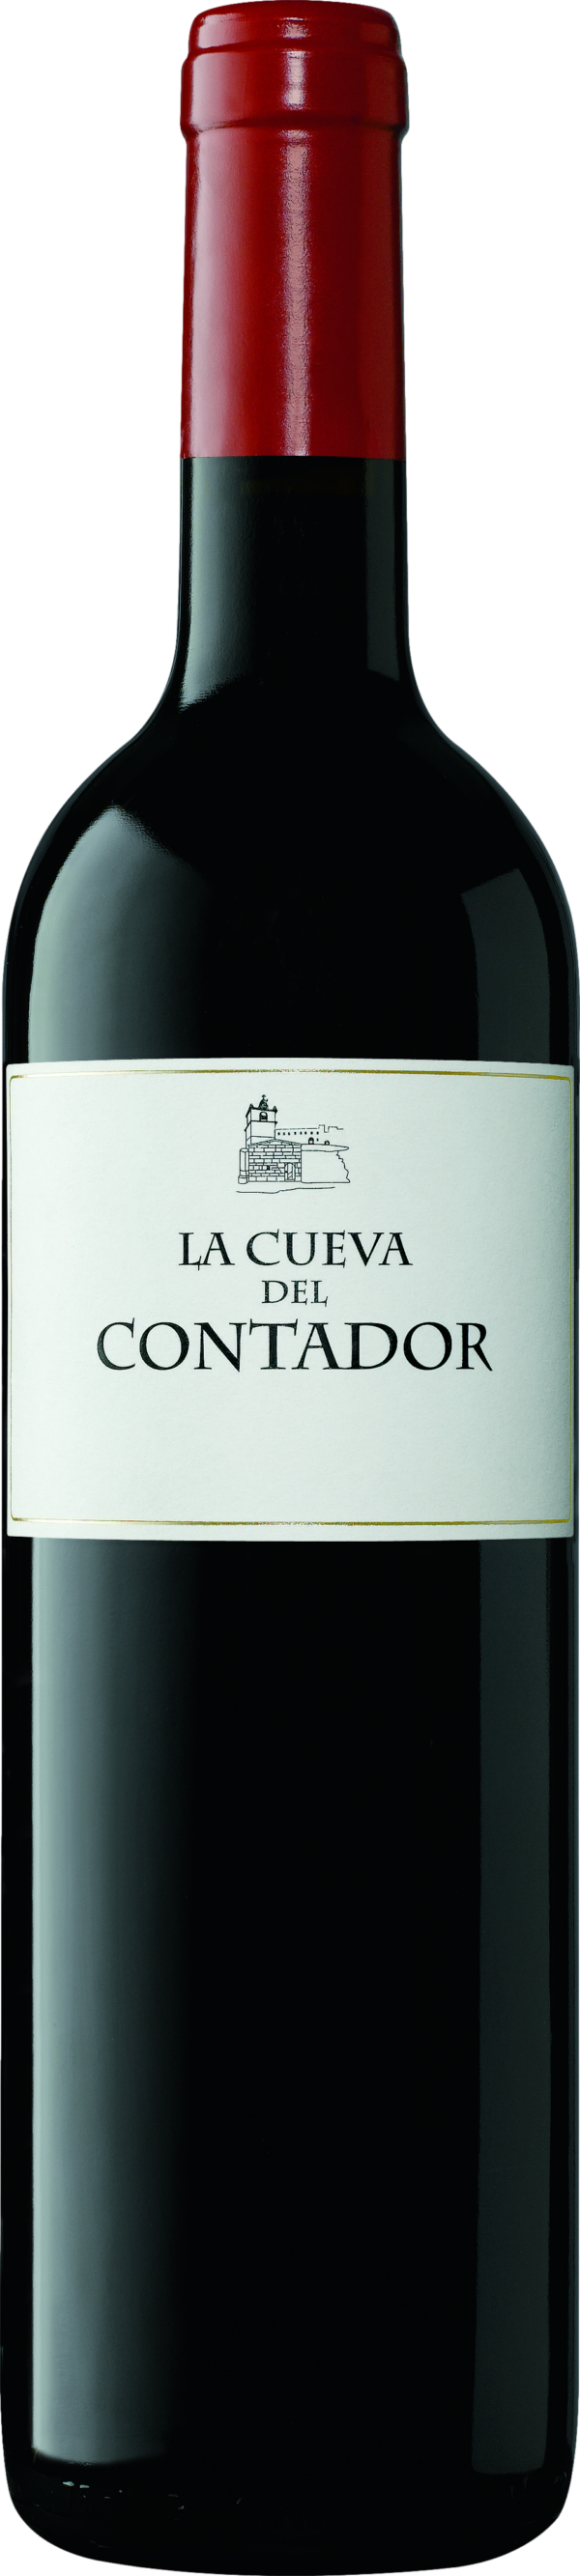 Product image of Bodegas Contador La Cueva del Contador Rioja 2020 from 8wines